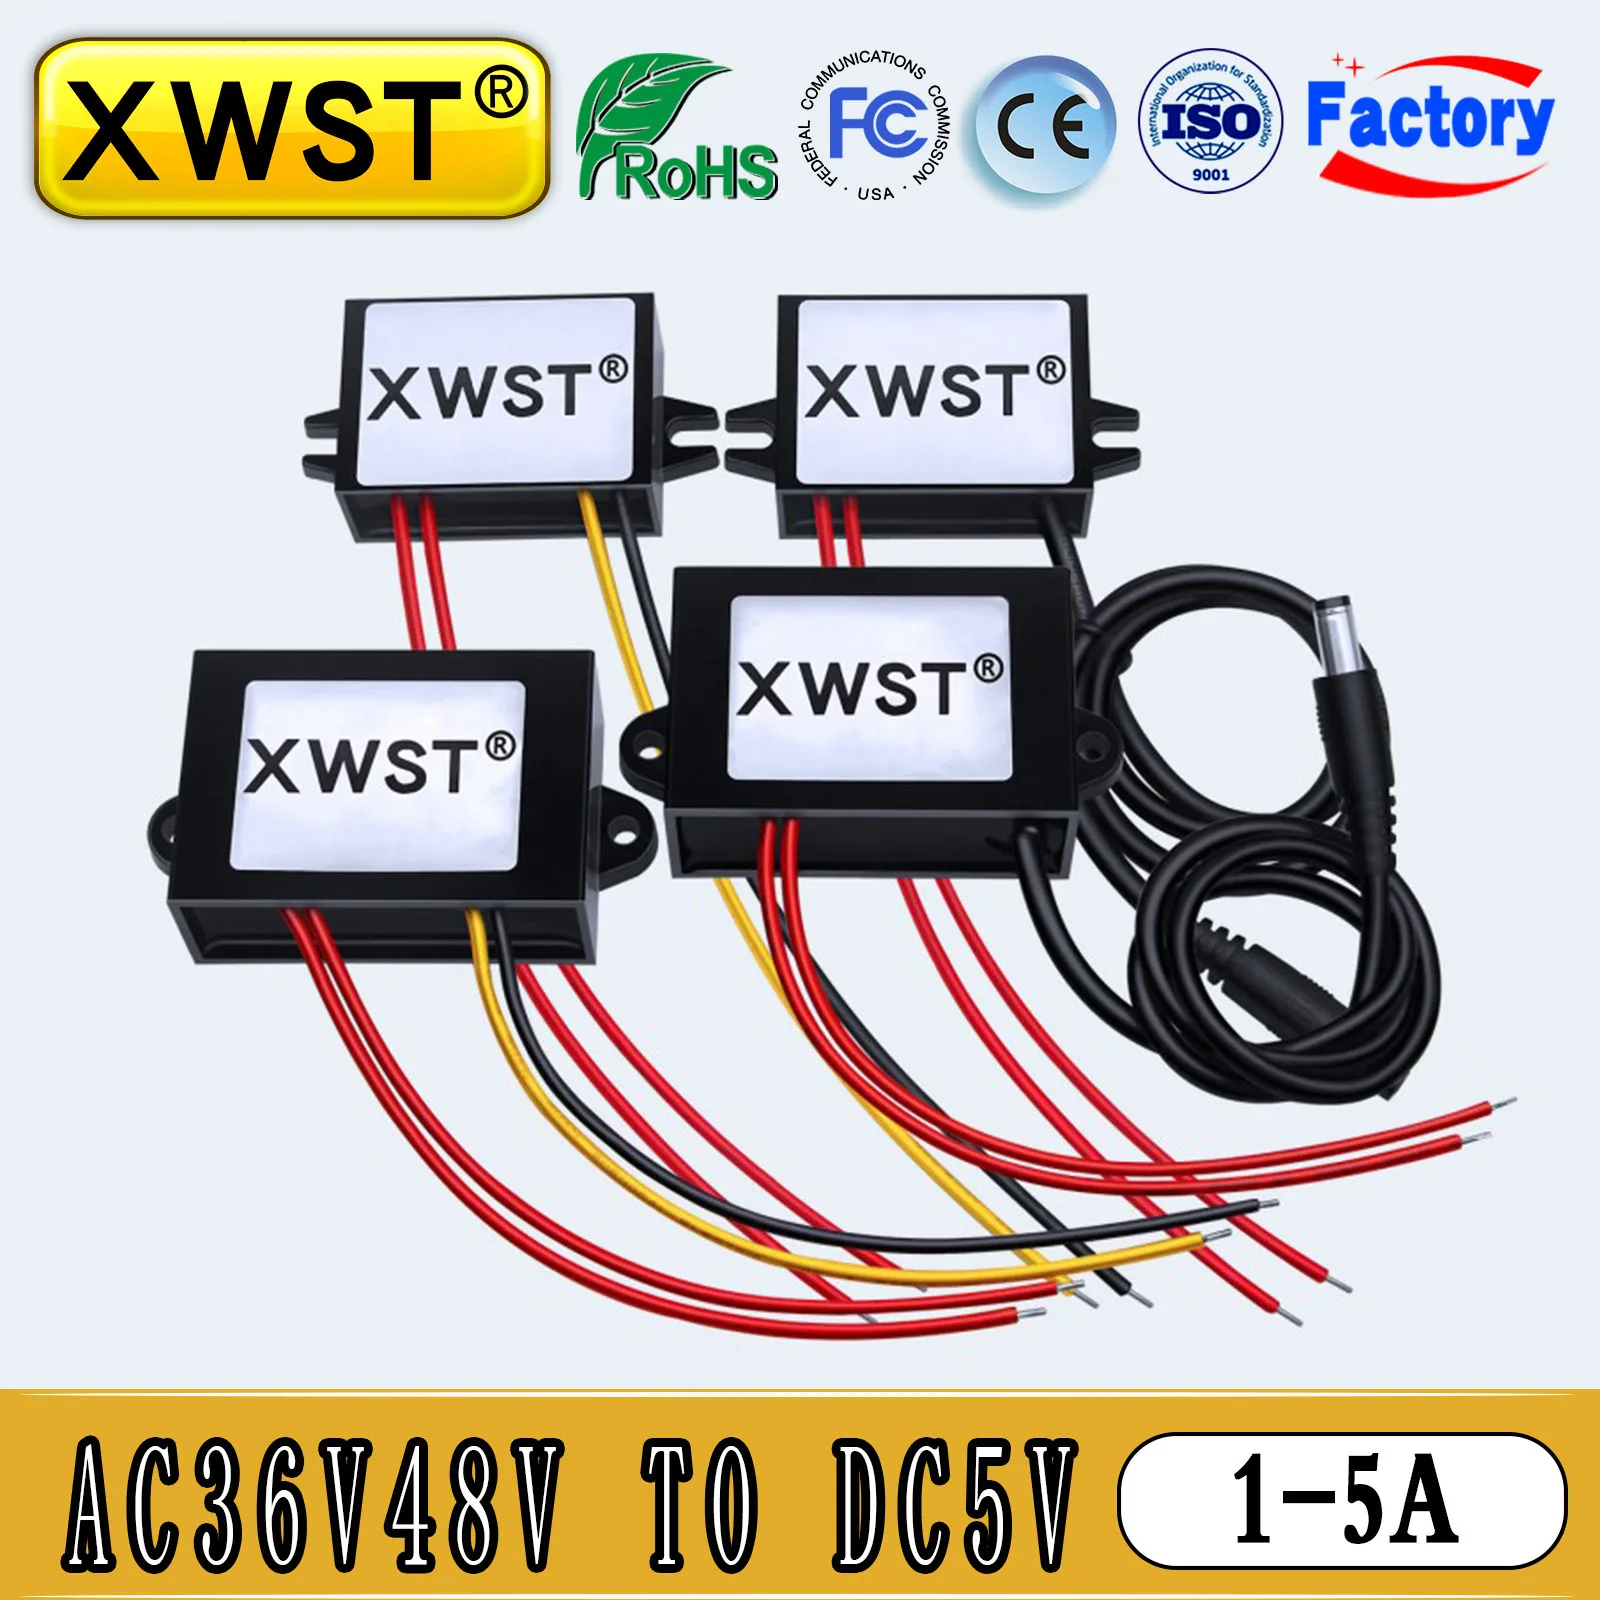 

XWST Converter AC36V48V to DC5V Step-down Power Inverter 1A 3A 5A Voltage Regulator Transformer Modual for Cars Solar DC Output